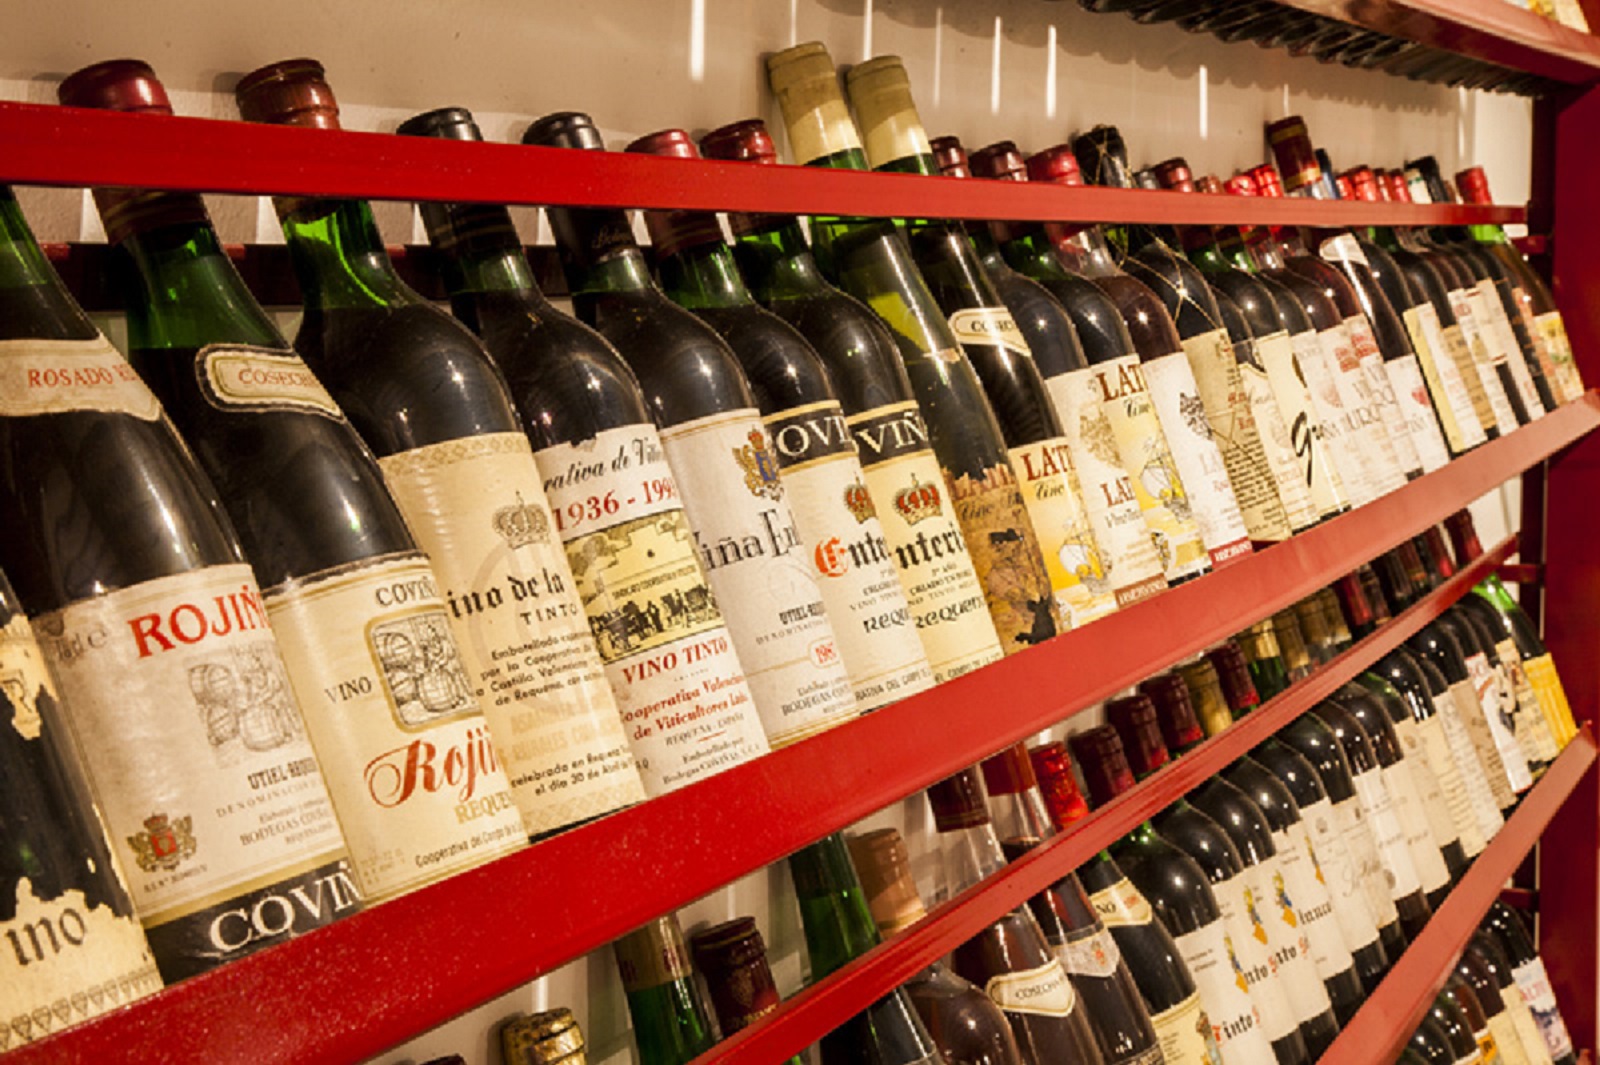 ¡Conoce la cultura del vino a través de los diferentes museos y exposiciones de la Ruta del Vino!